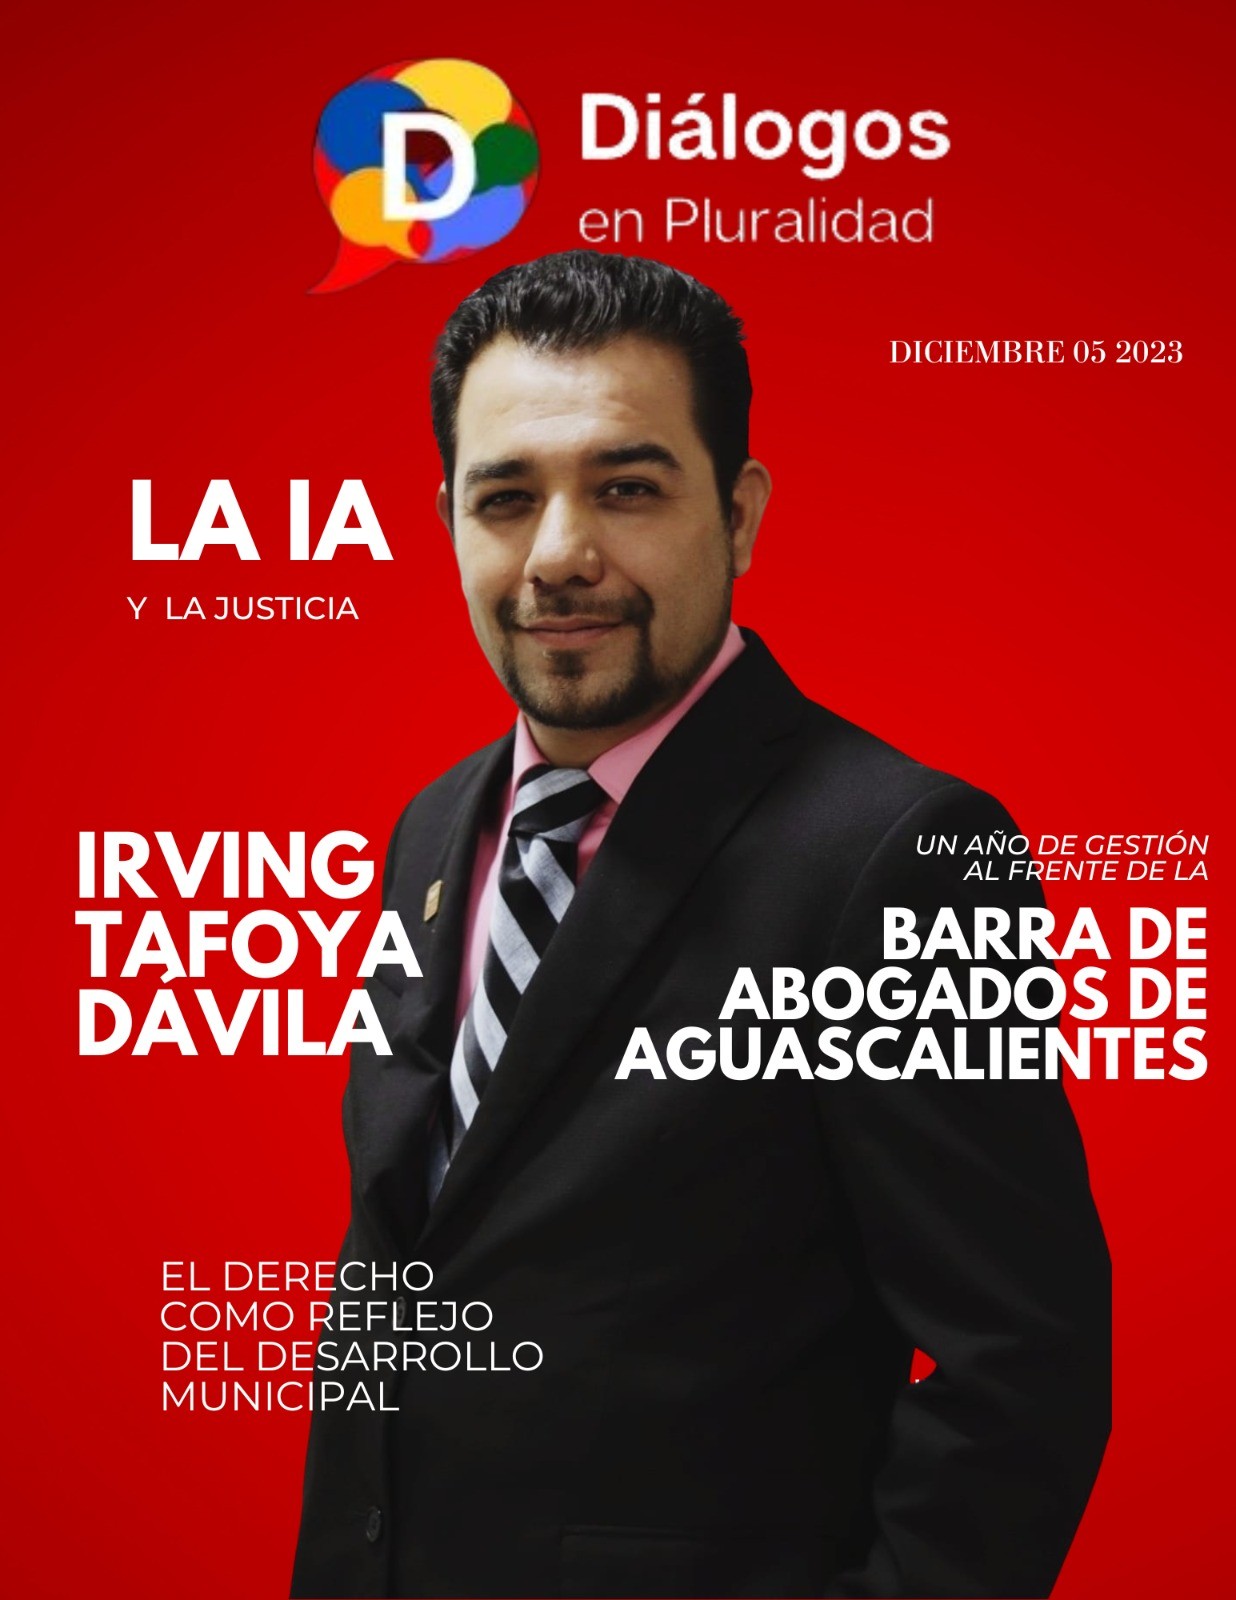 Irving Tafoya Dávila: A un año de gestión al frente de la Barra de Abogados de Aguascalientes y la IA en la Justicia